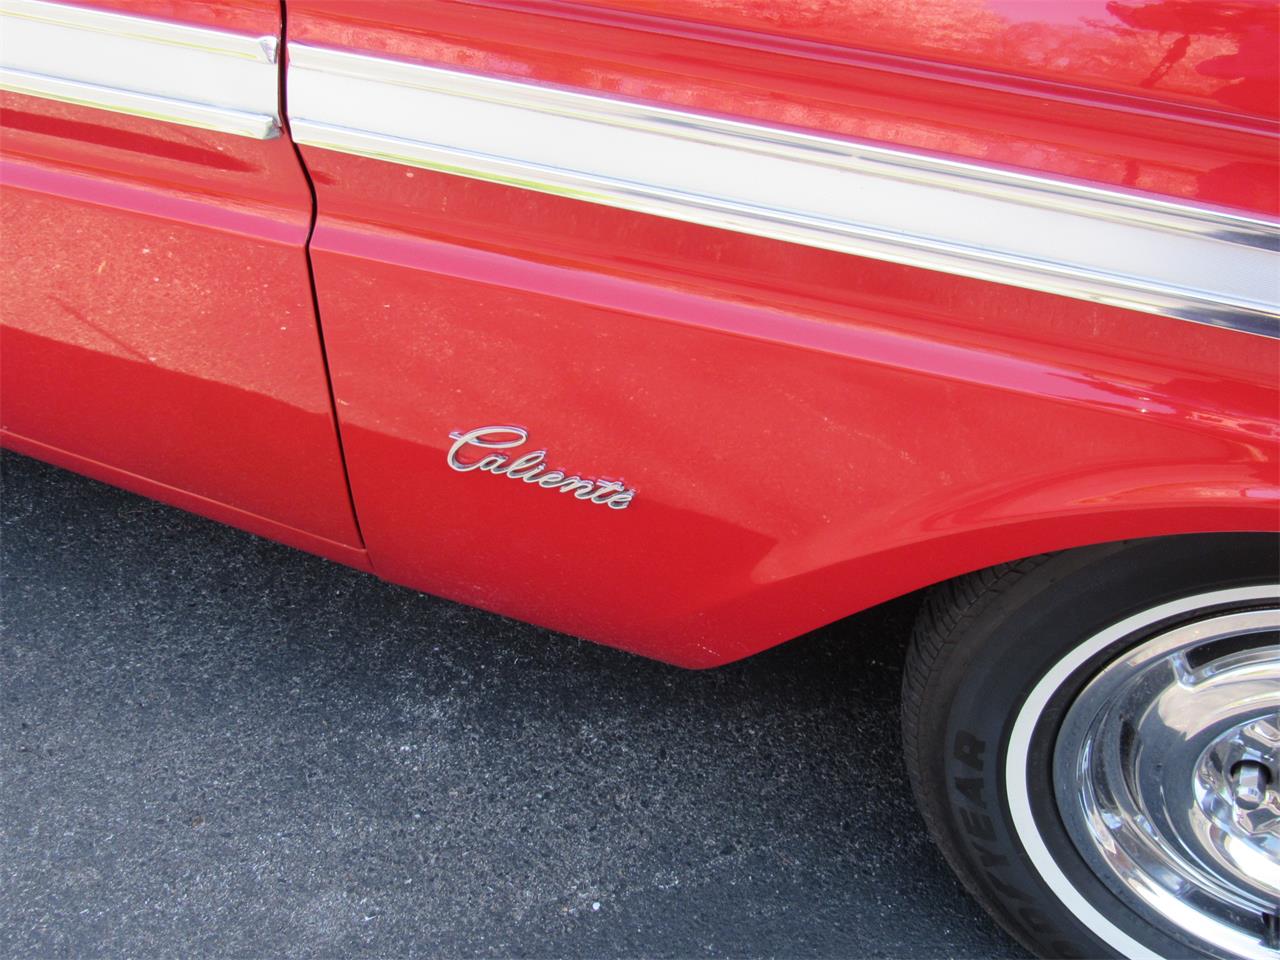 1964 Mercury Comet Caliente Convertible for Sale | ClassicCars.com | CC ...